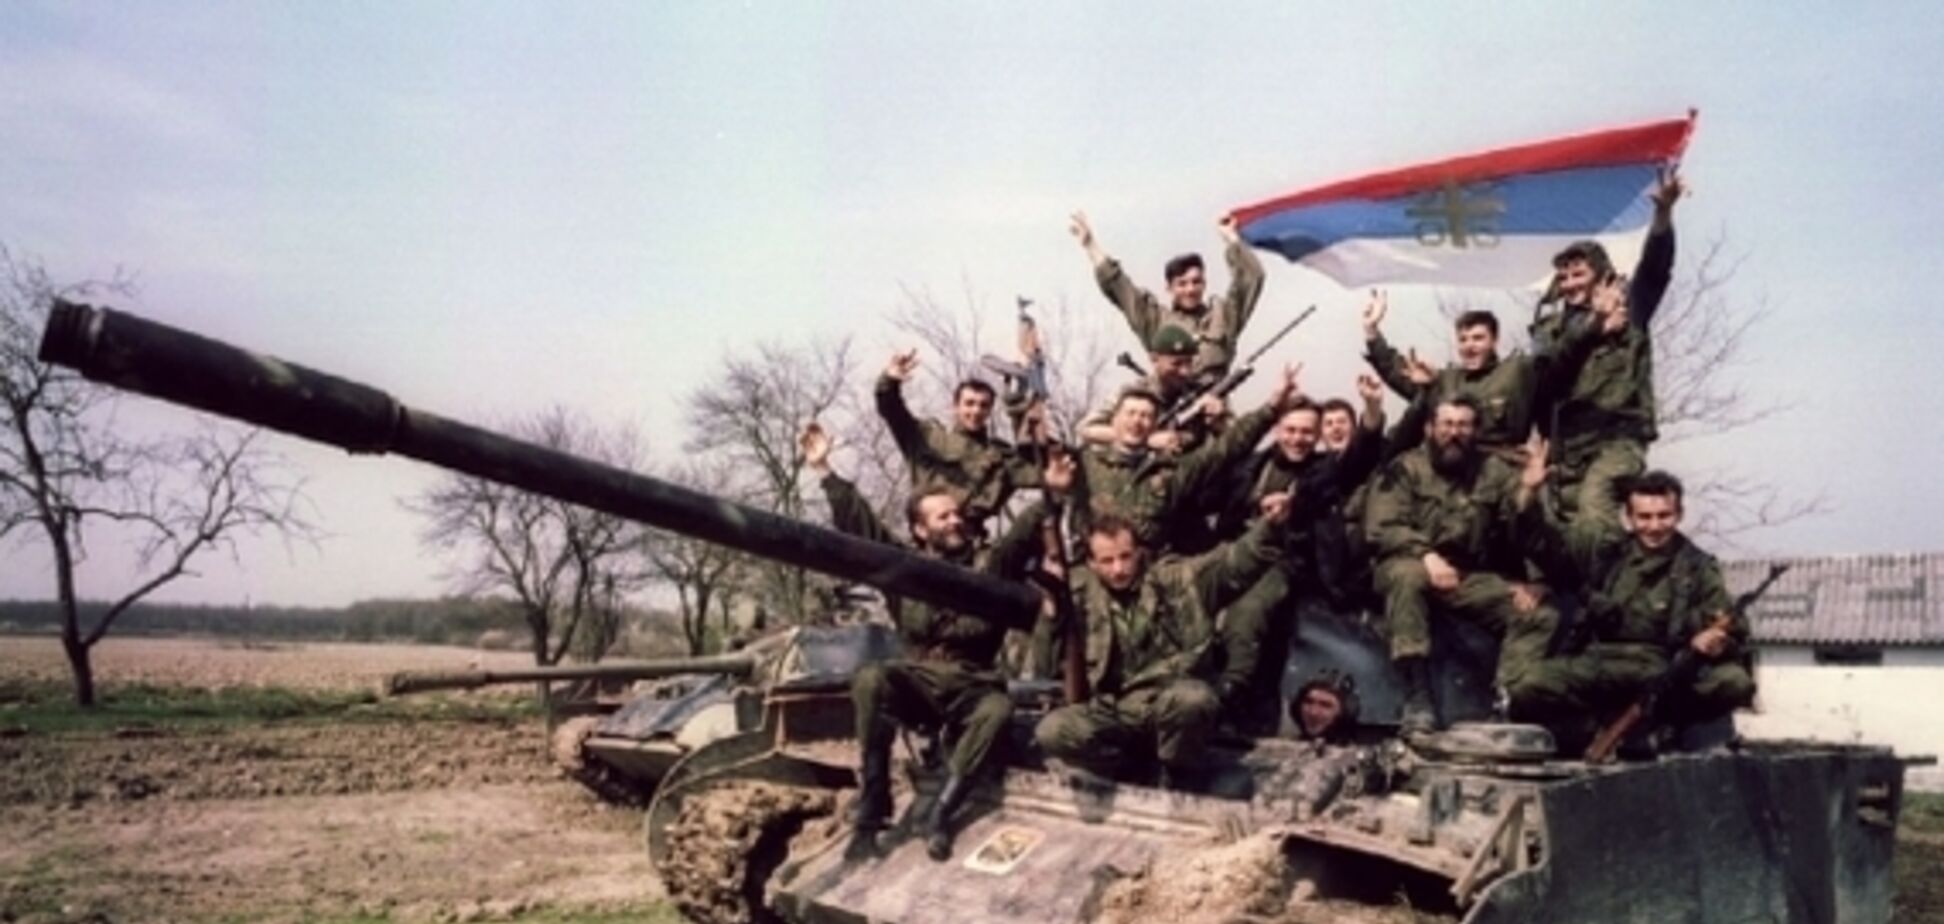  Война в Югославии опять рассорила НАТО с Россией: детали международного скандала